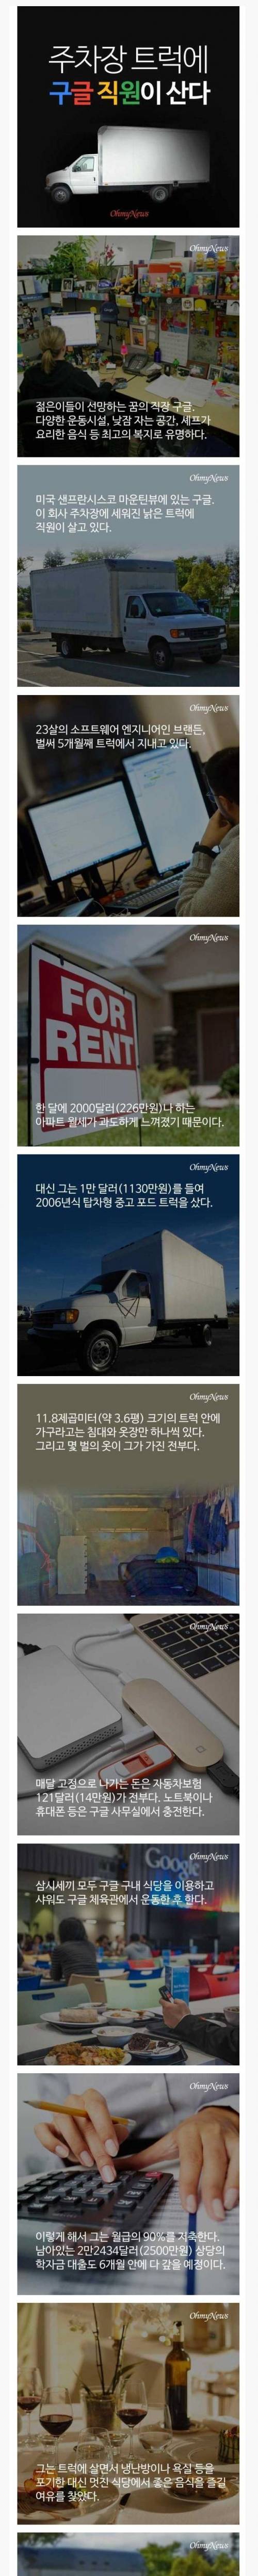 주차장 트럭에 사는 구글 직원.jpg